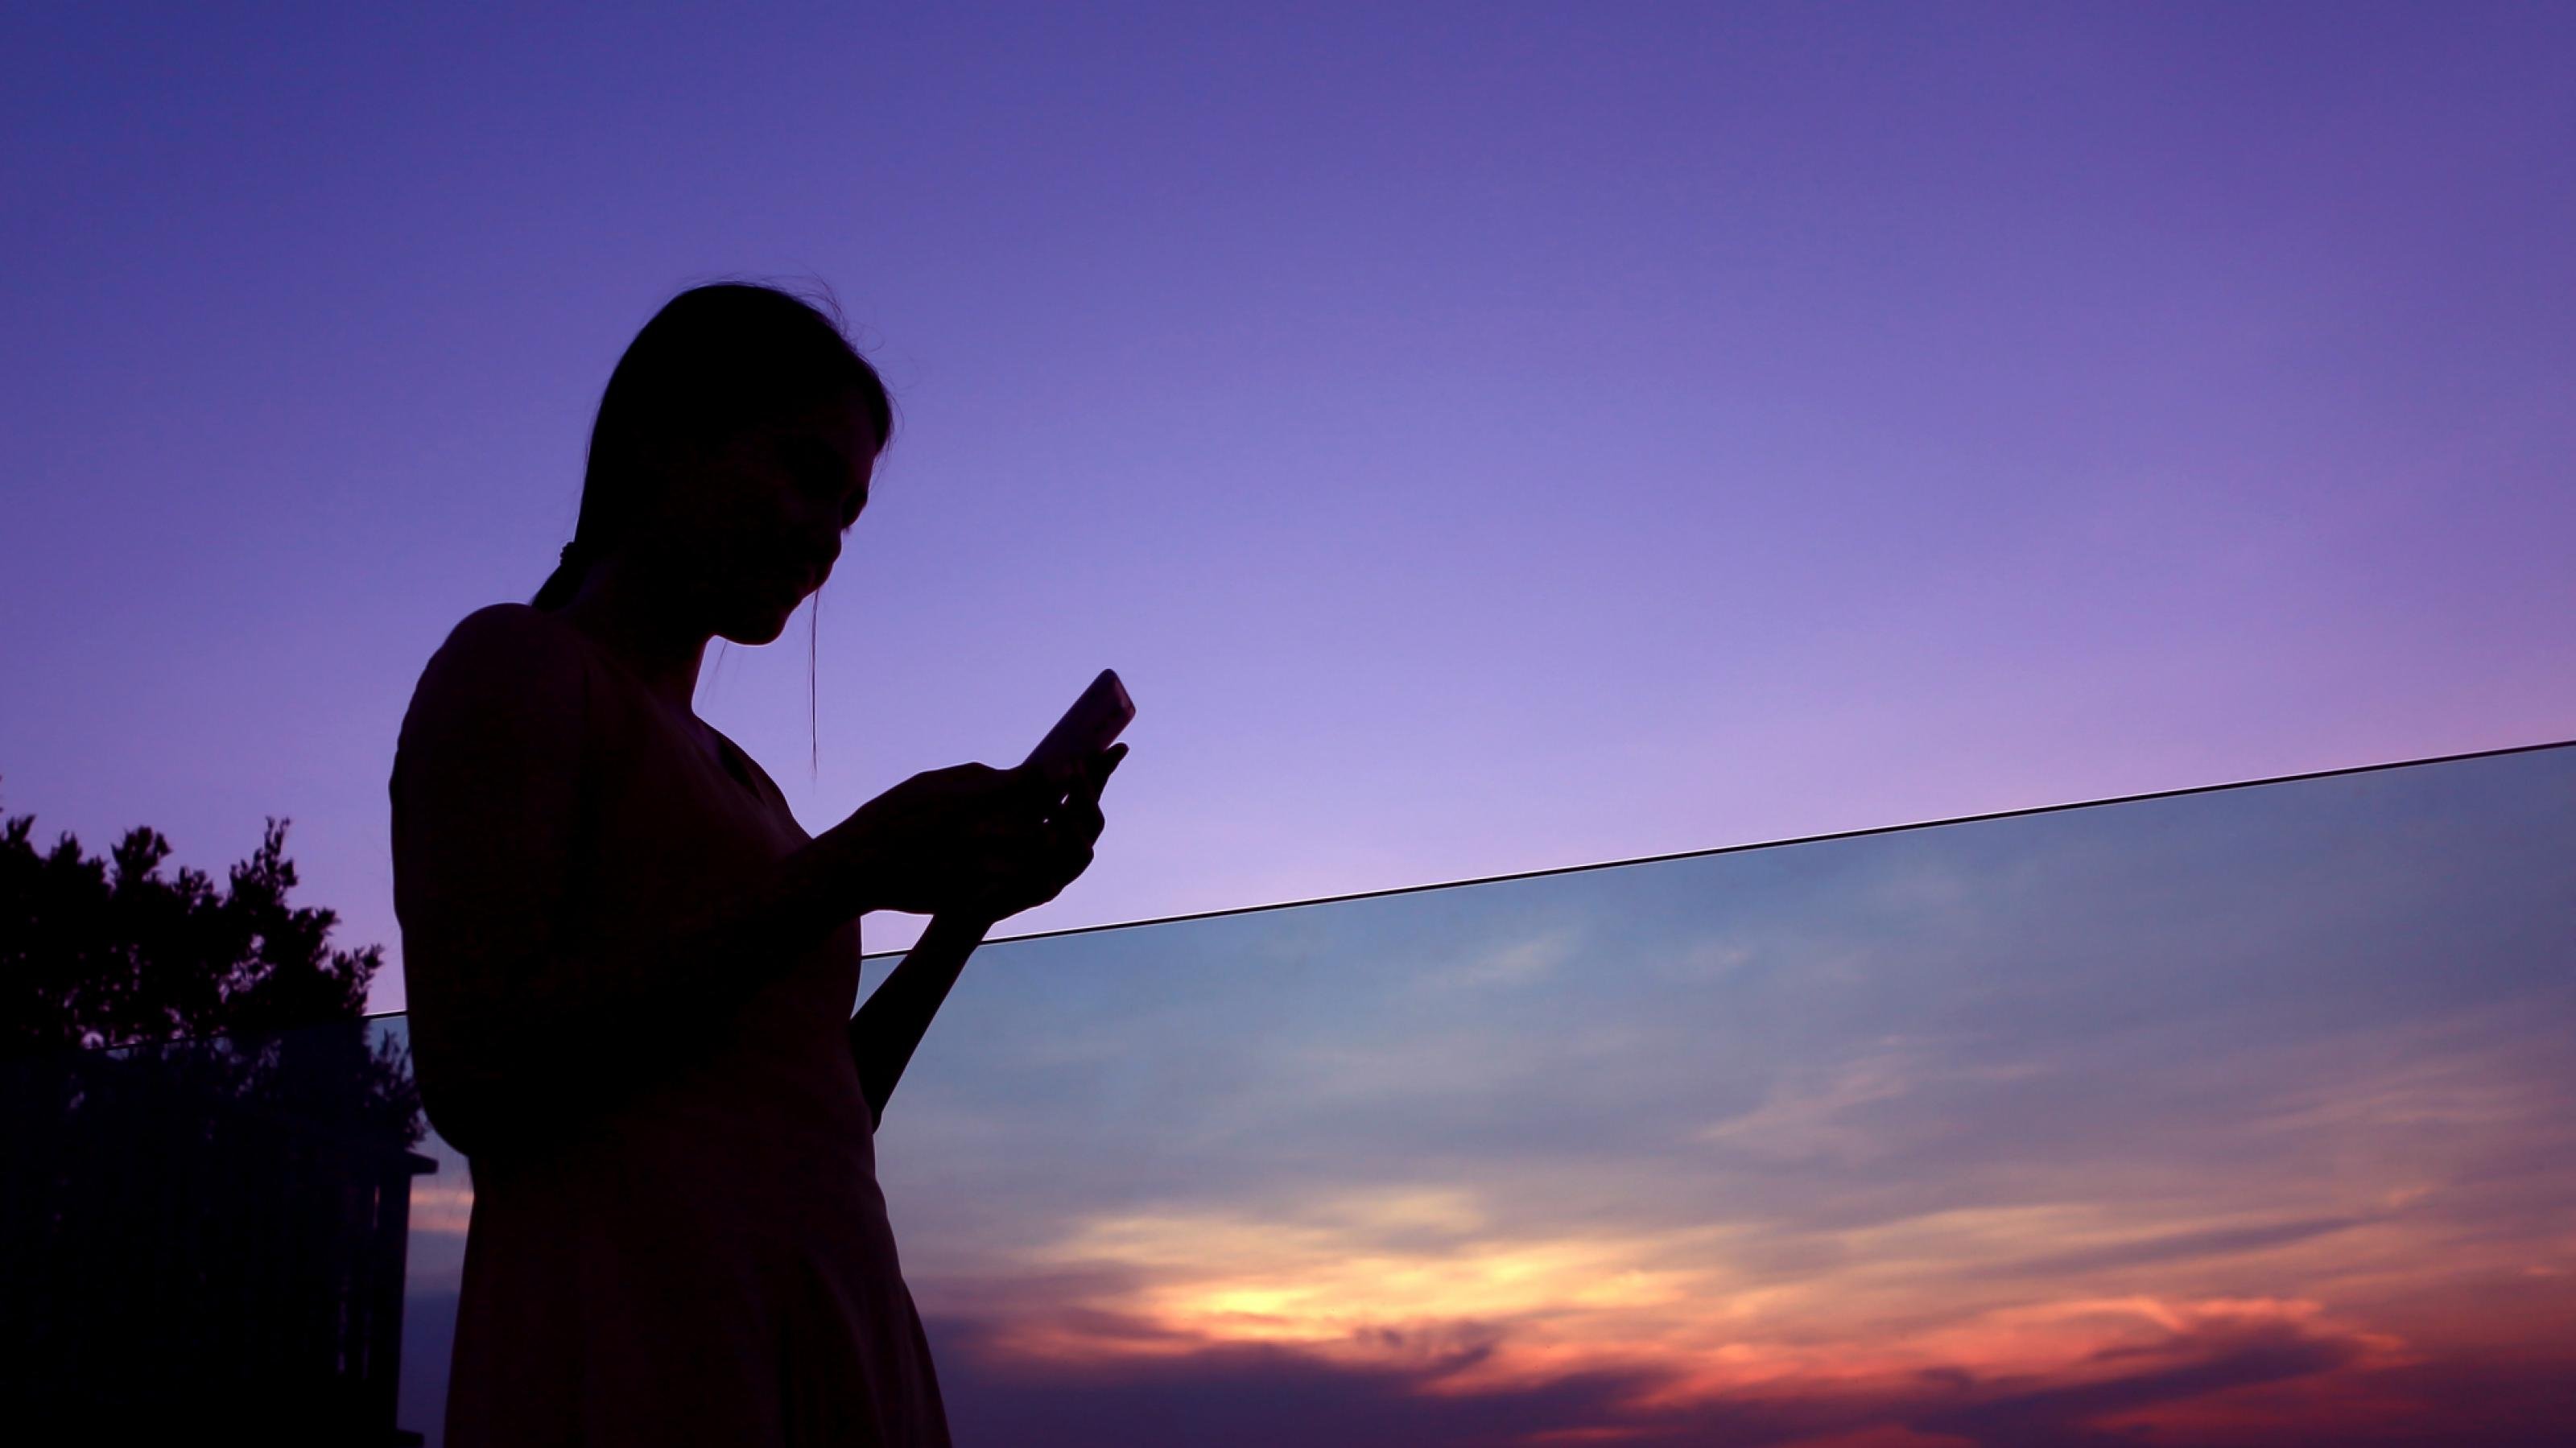 Die Silhouette einer jungen Frau vor einem lila Abendhimmel. Sie hält ein Smartphone in der Hand